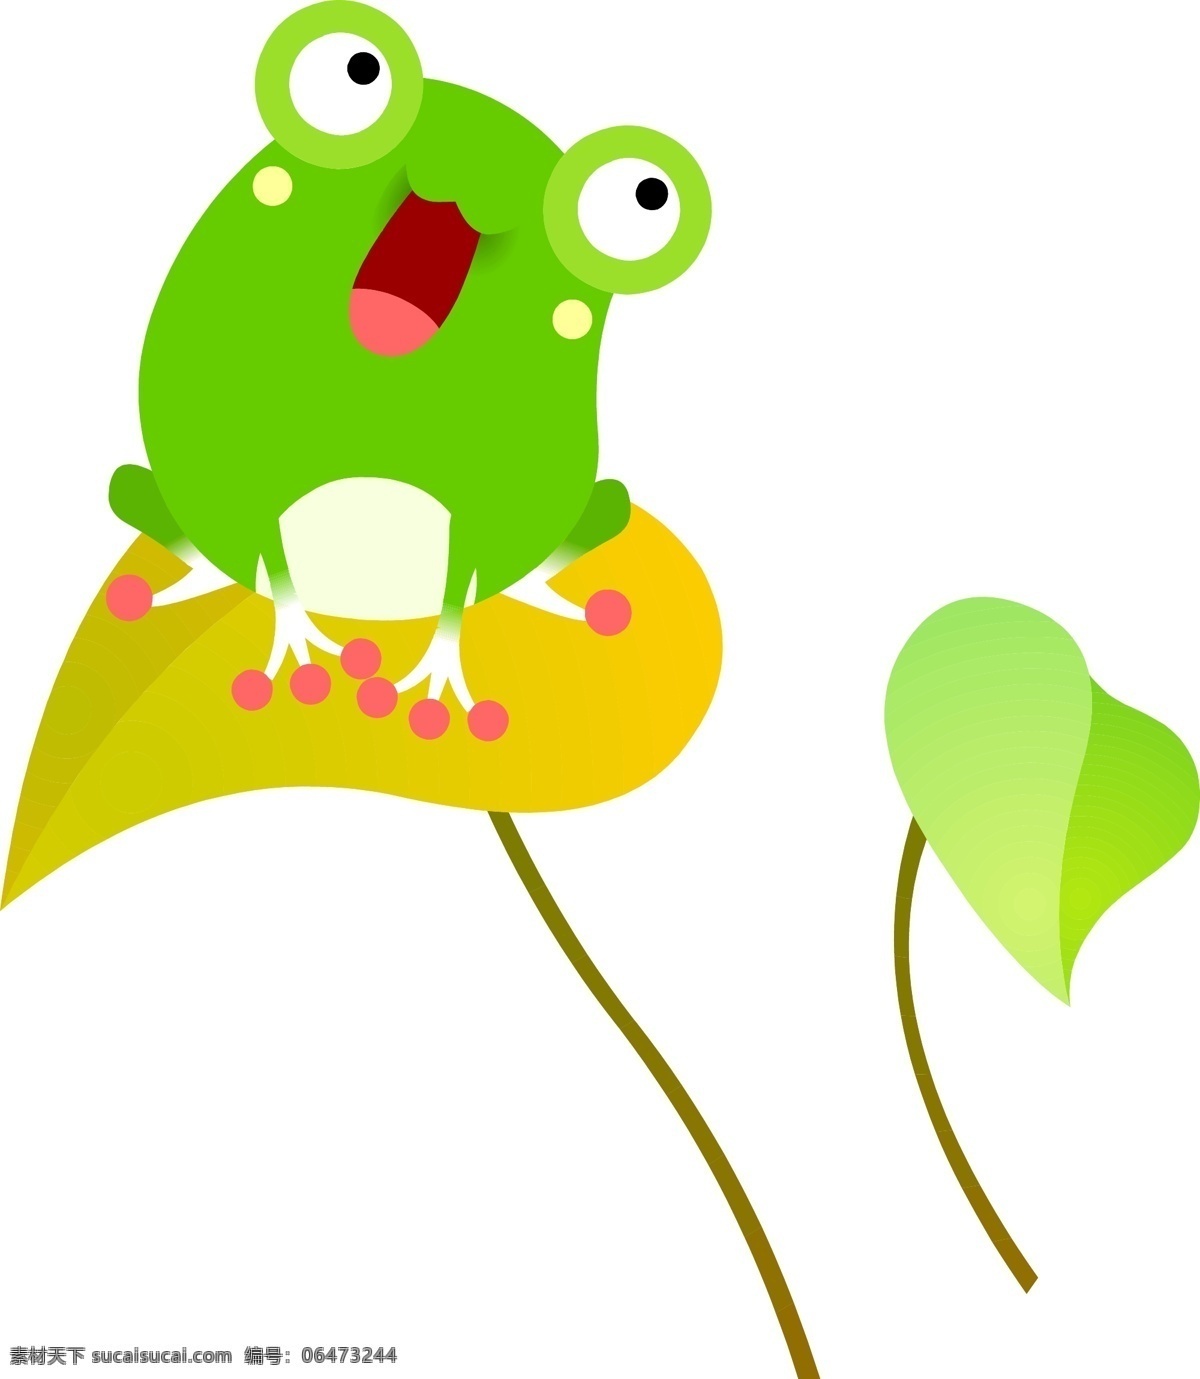 卡通 矢量 青蛙 可爱 绿色 矢量图 其他矢量图